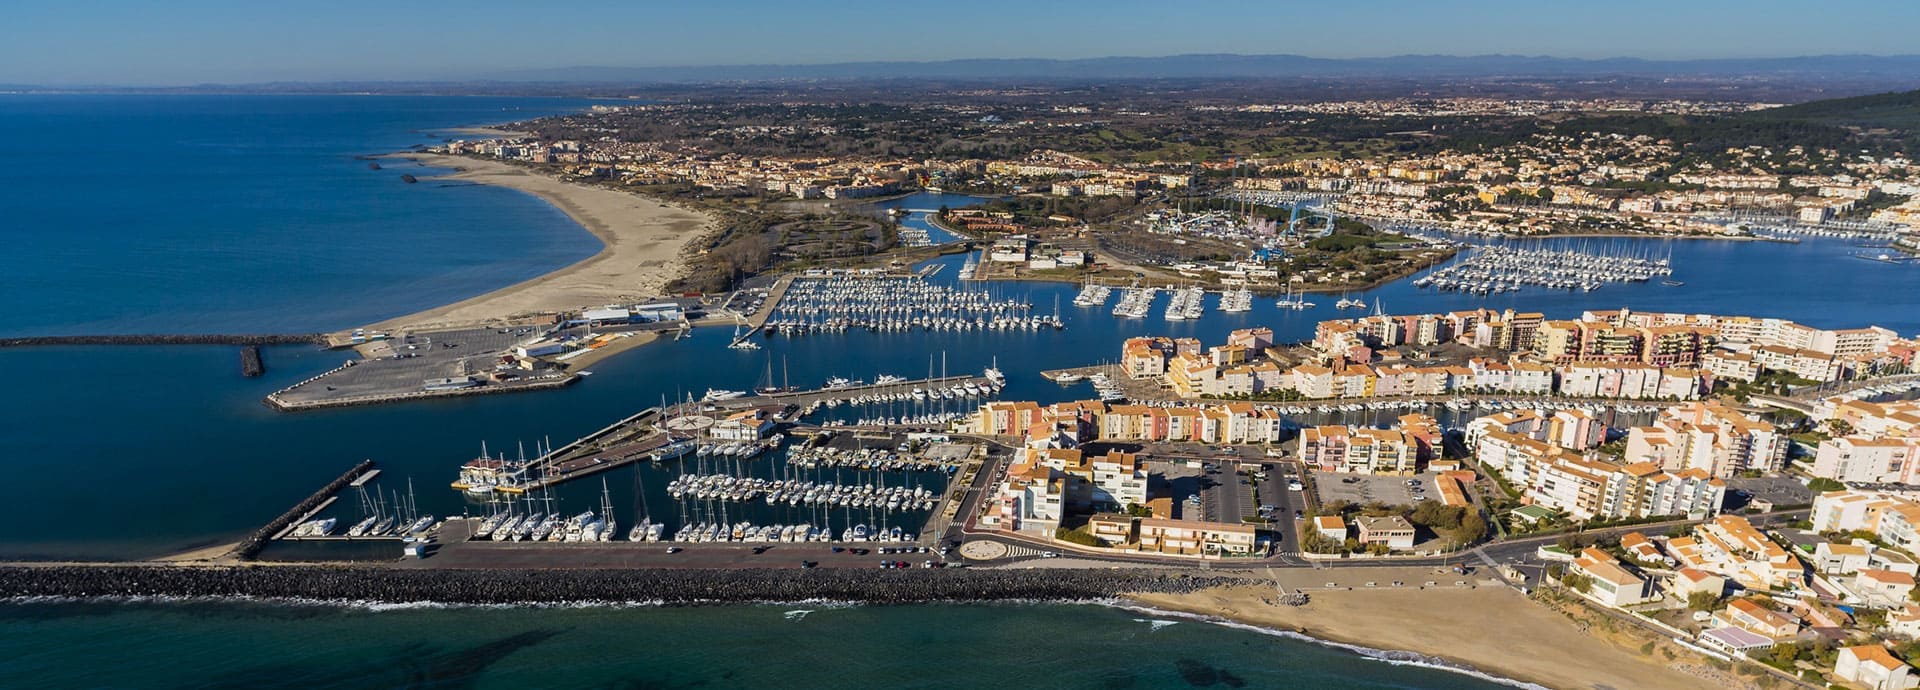 Luchtfoto van de stad Sète